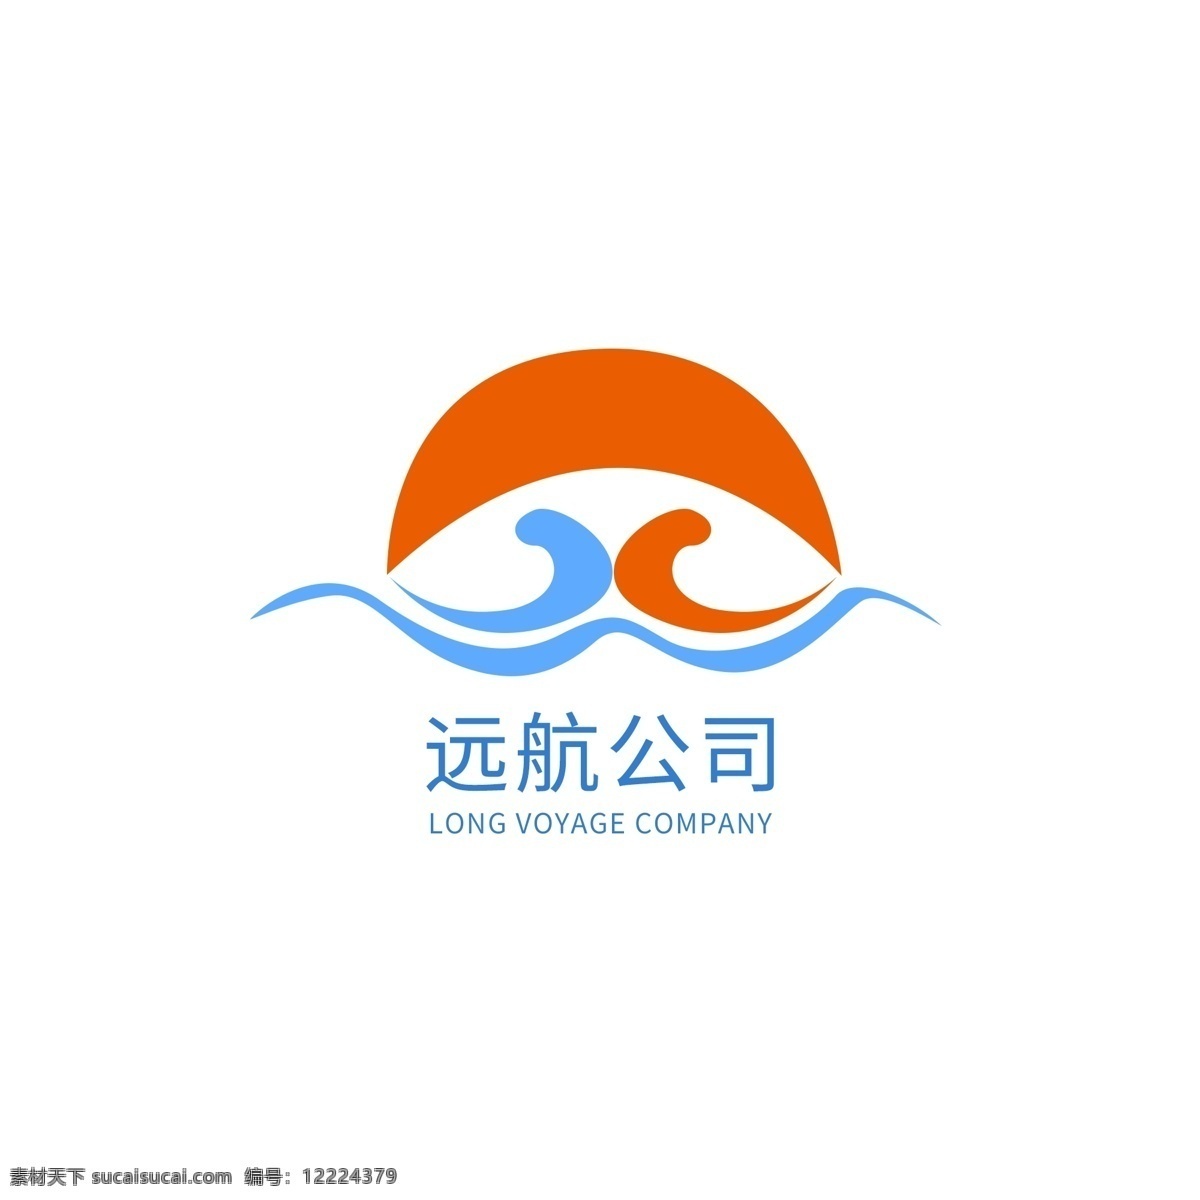 简约 渐变 通用 远航 商务 公司 logo it logo设计 标志设计 创新 聚焦 科技 科技风 商务logo 原创 远航公司